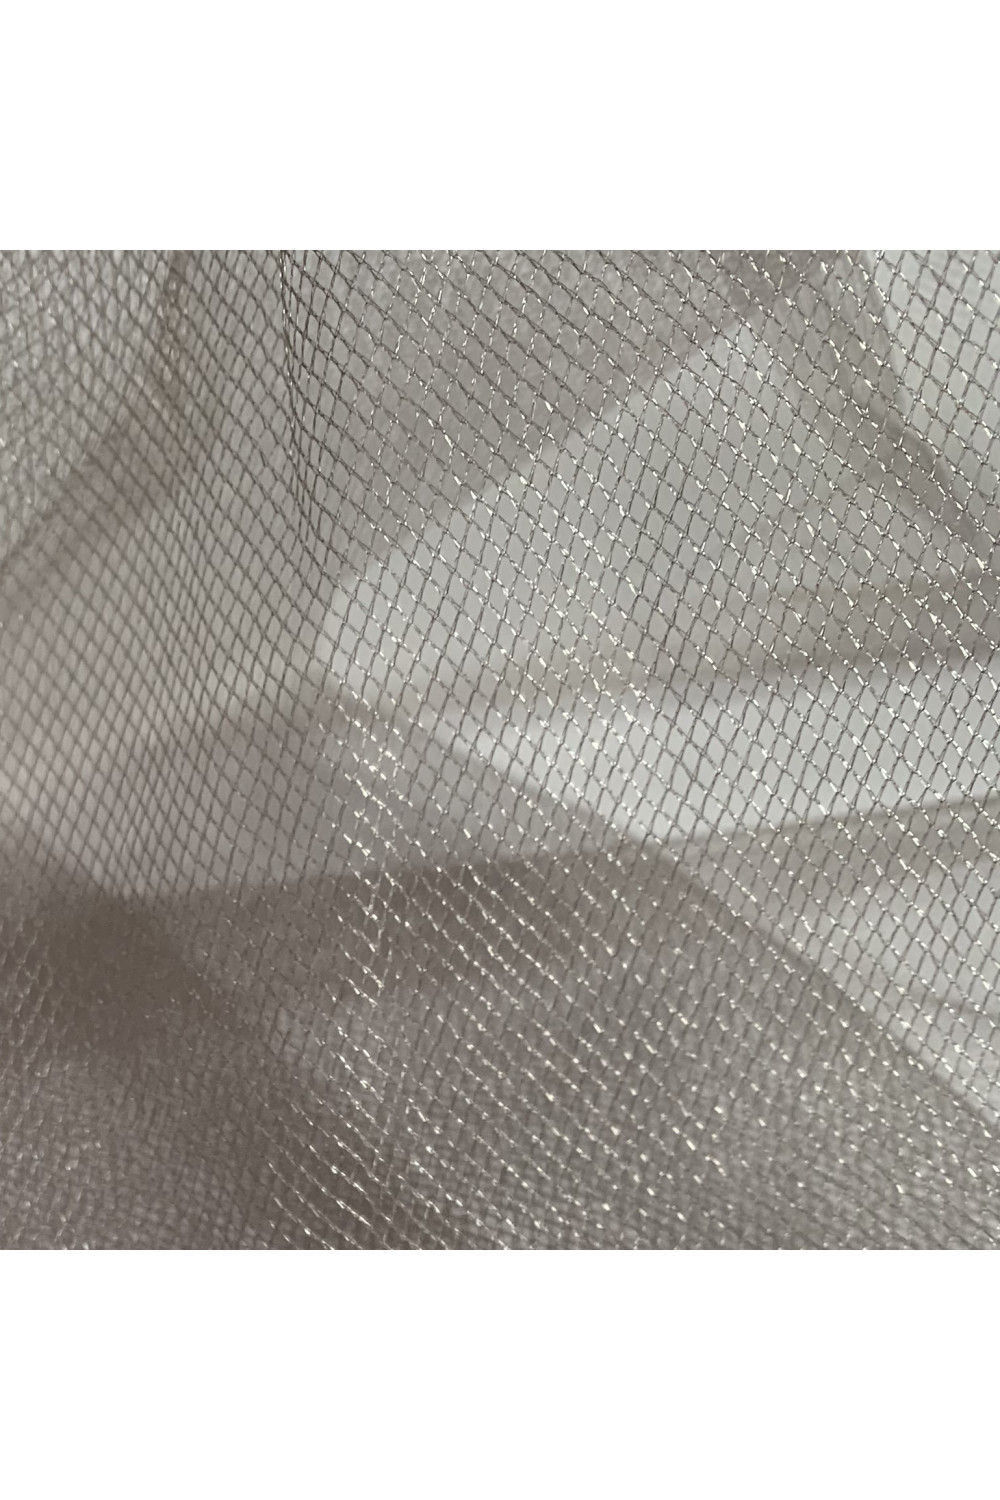 Tiul srebrny na dekoracje spódnice suknie. Tiul dekoracyjny